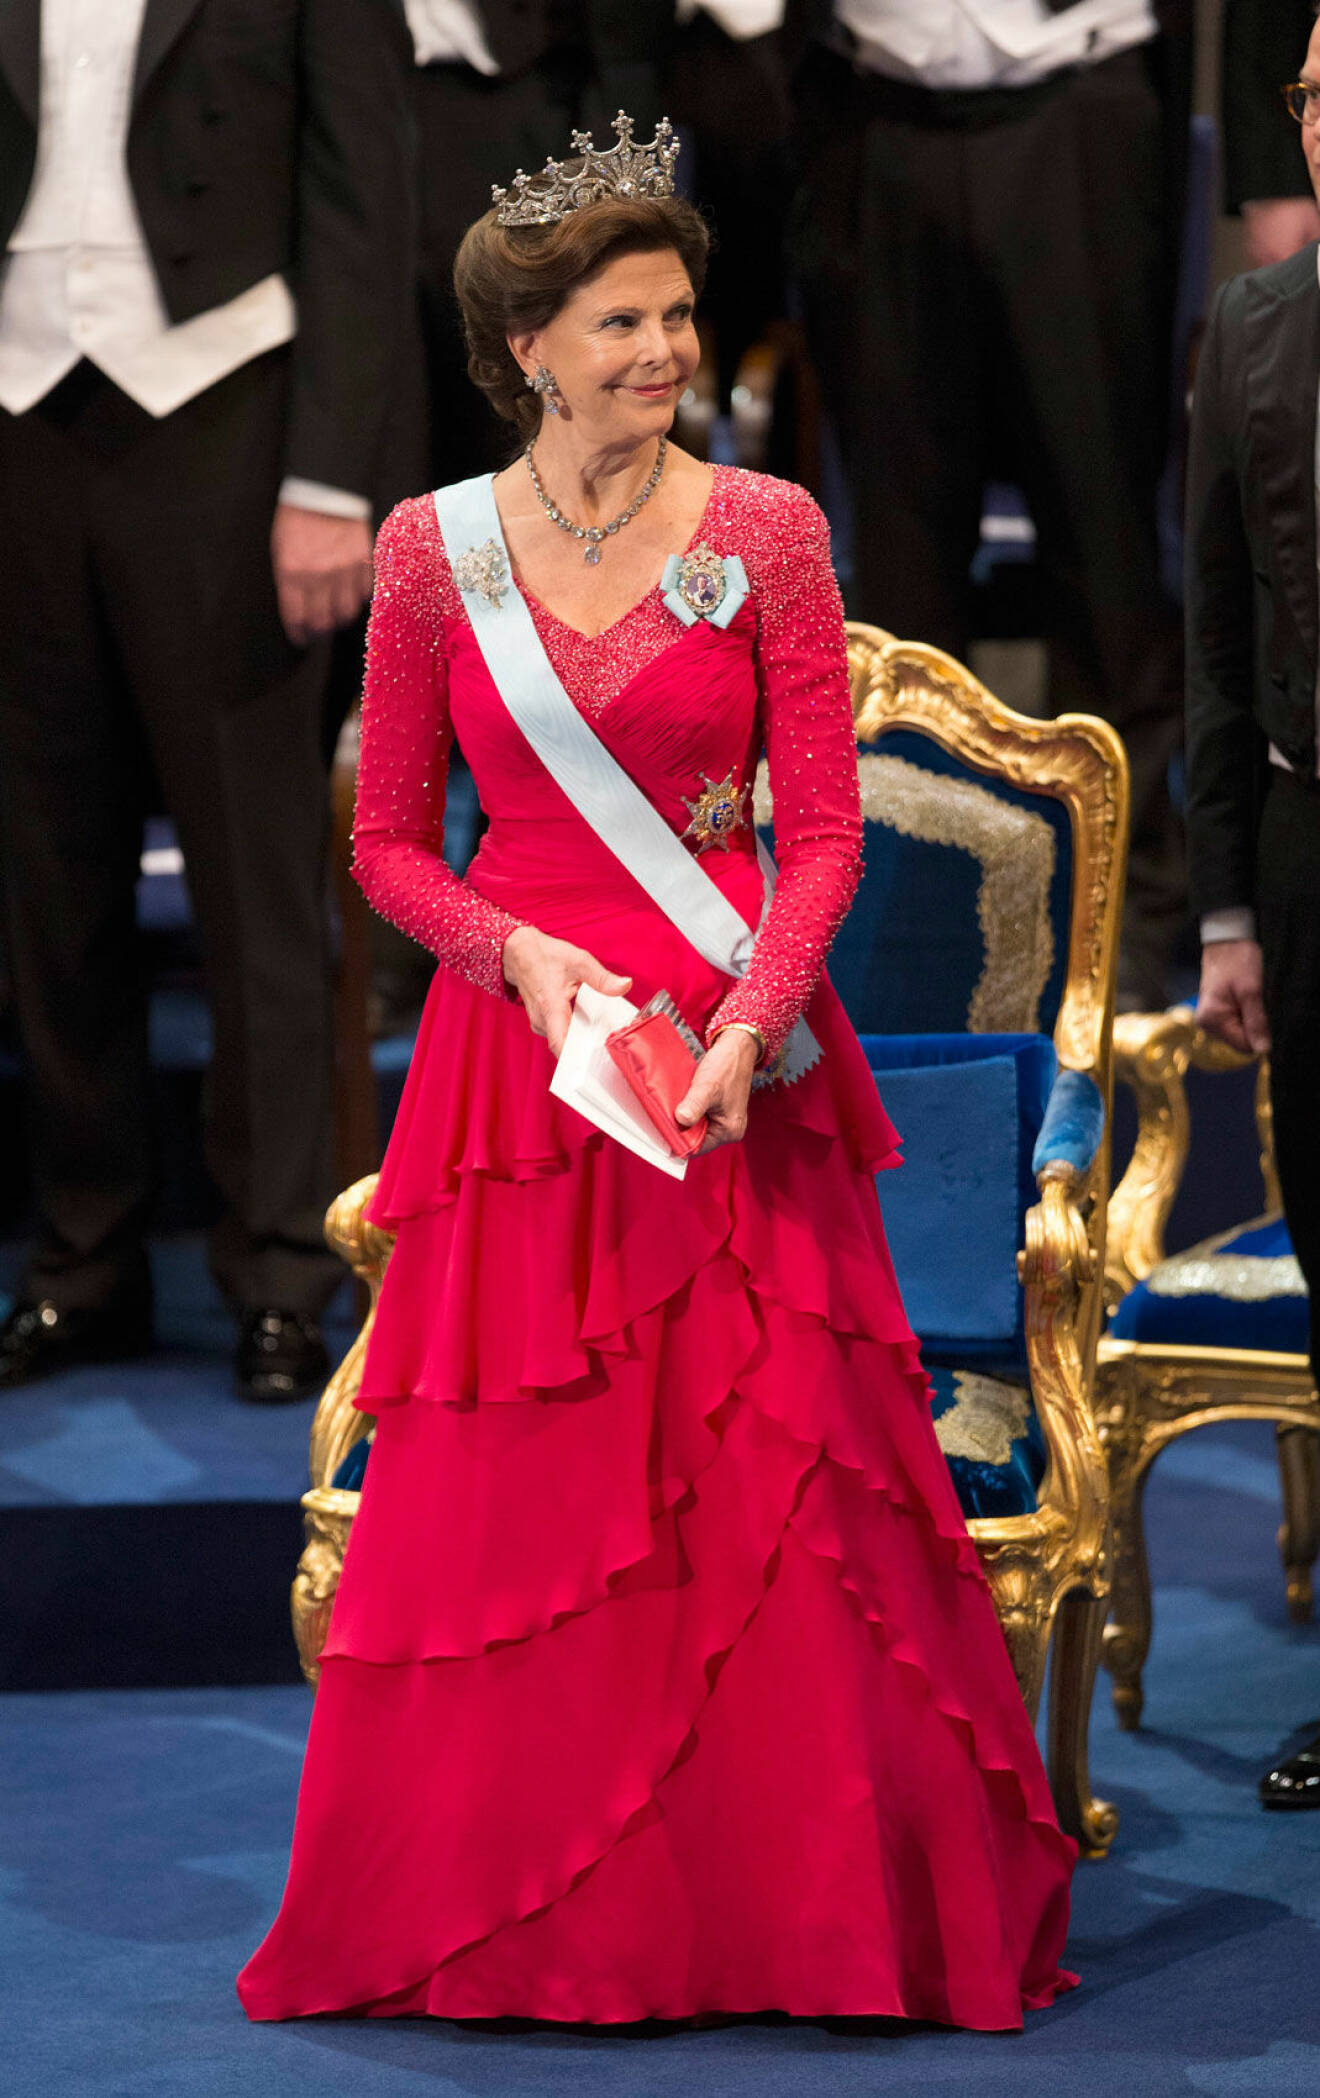 2013 bar drottningen en klänning som vi för första gången såg i samband med prinsessan Madeleines bröllop tidigare samma år